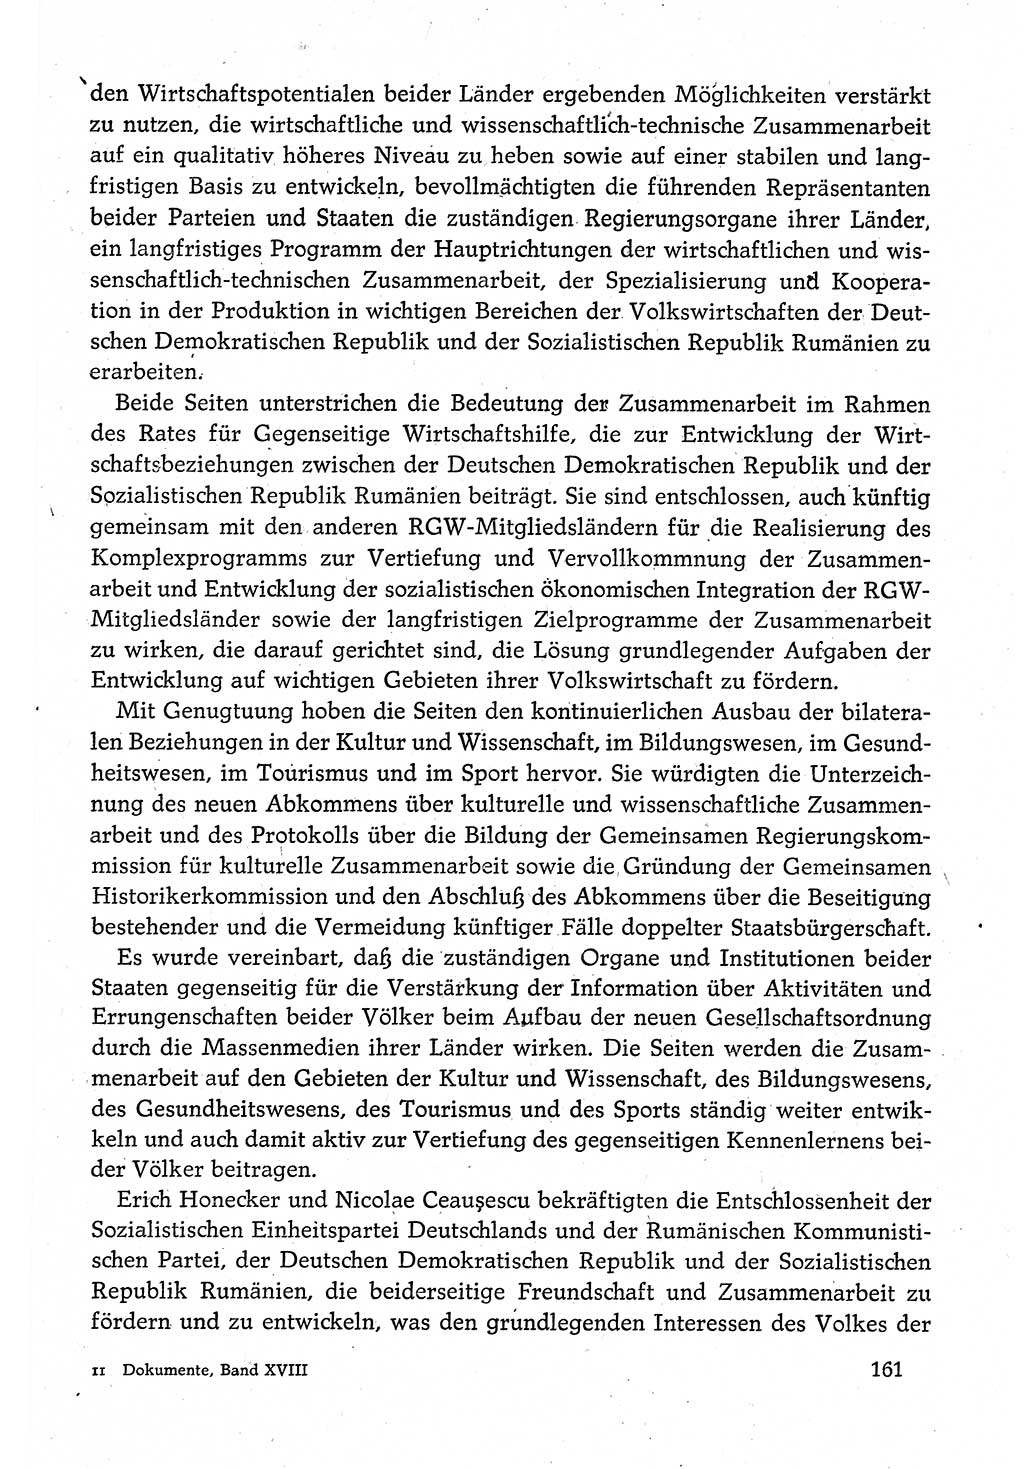 Dokumente der Sozialistischen Einheitspartei Deutschlands (SED) [Deutsche Demokratische Republik (DDR)] 1980-1981, Seite 161 (Dok. SED DDR 1980-1981, S. 161)